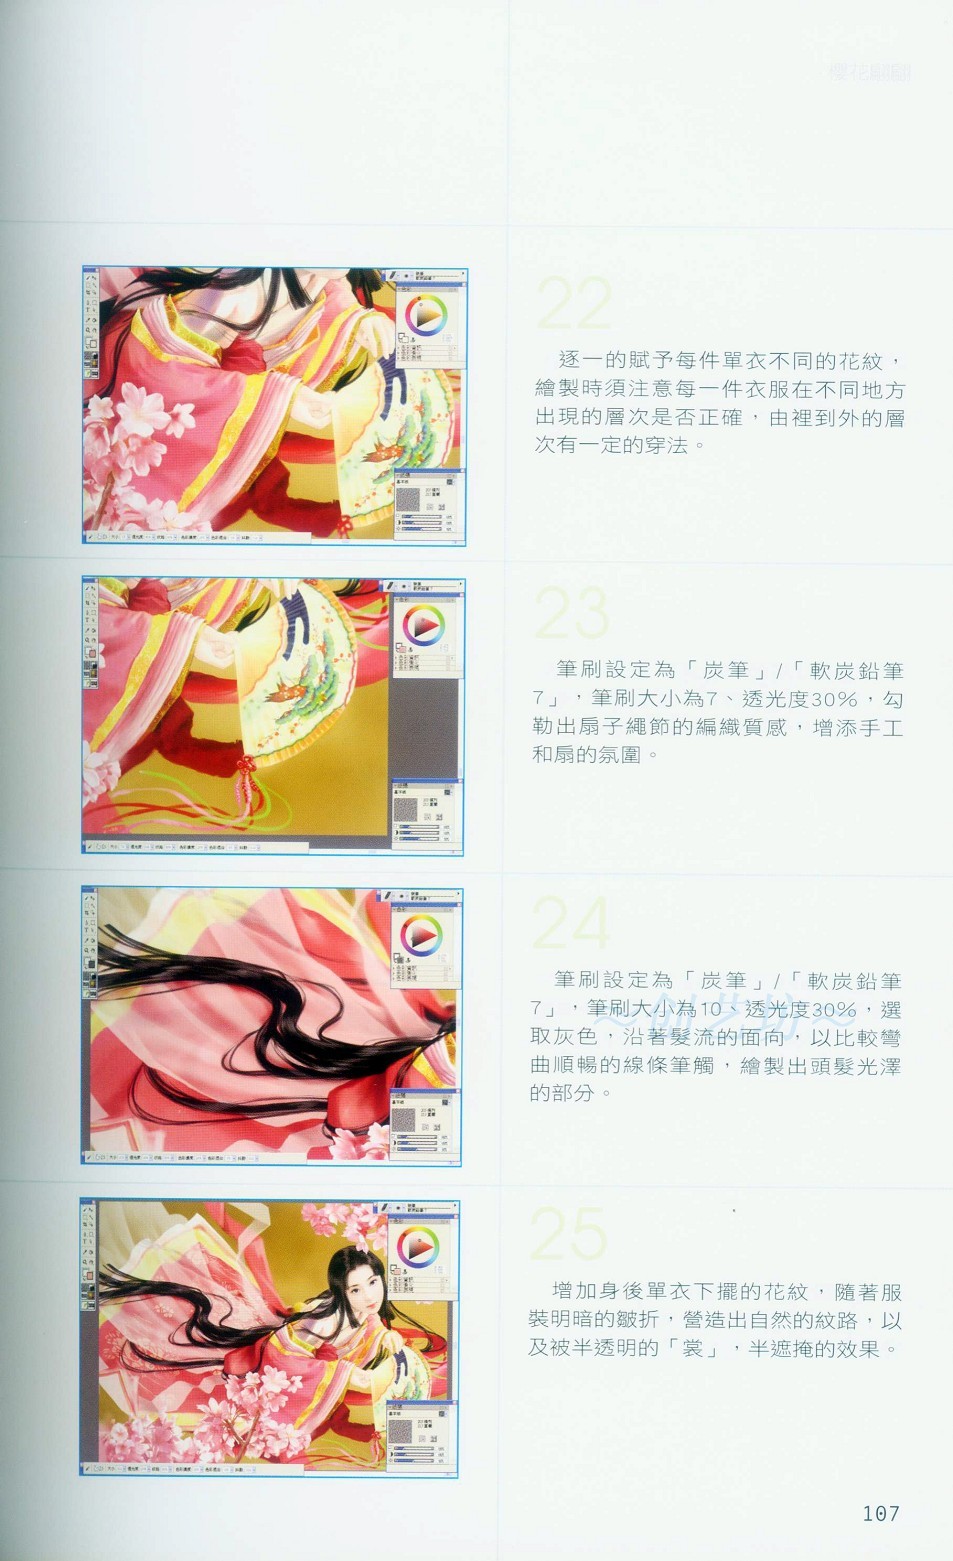 Painter绘制和服美女-插画王子技巧公开 软件云 Painter教程107.jpg